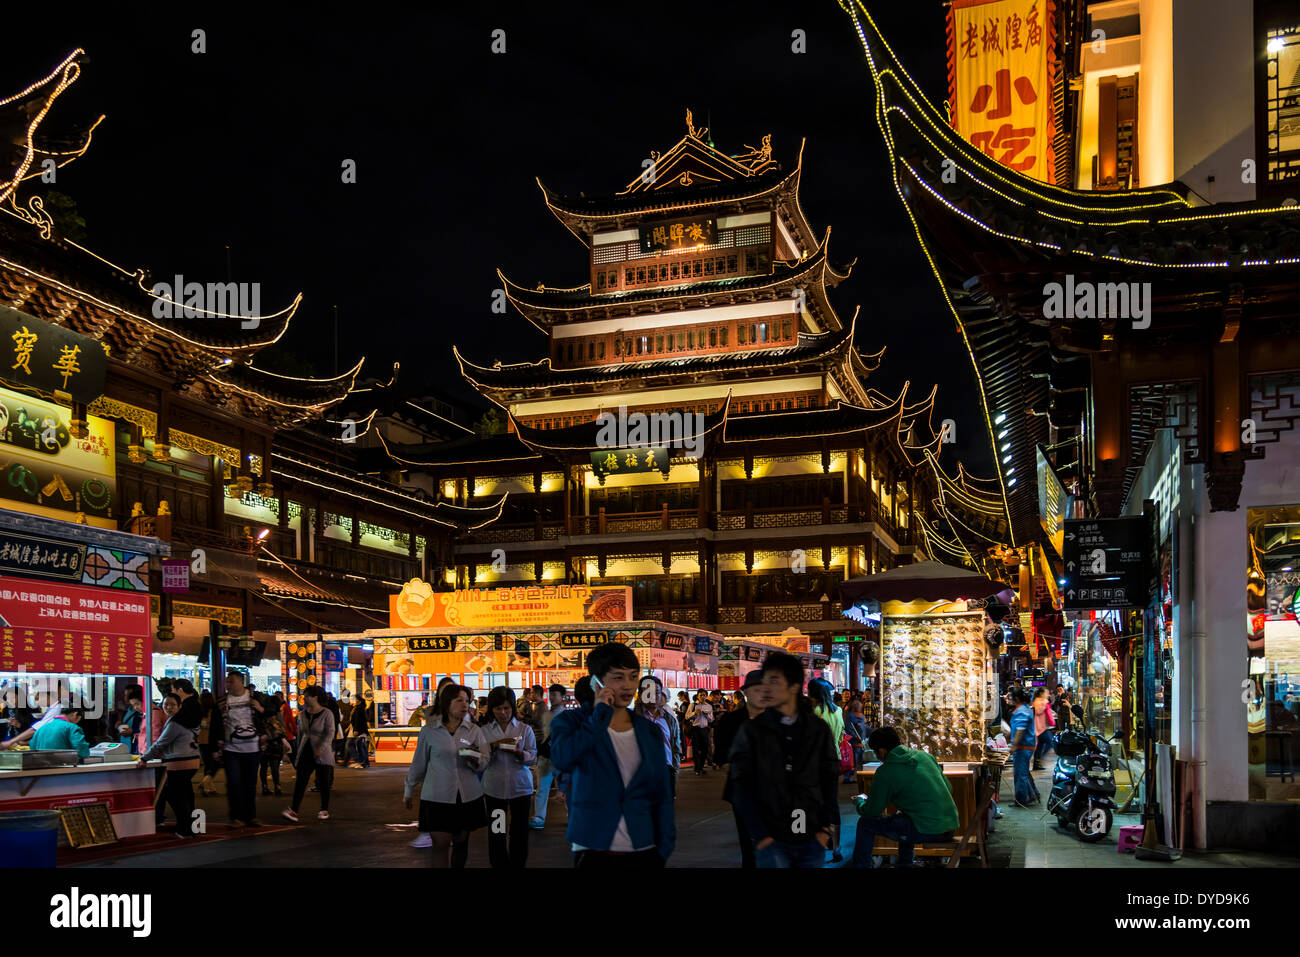 Altstadt mit traditionellen Gebäuden in der Nacht, Illuminationen, Shanghai, China Stockfoto